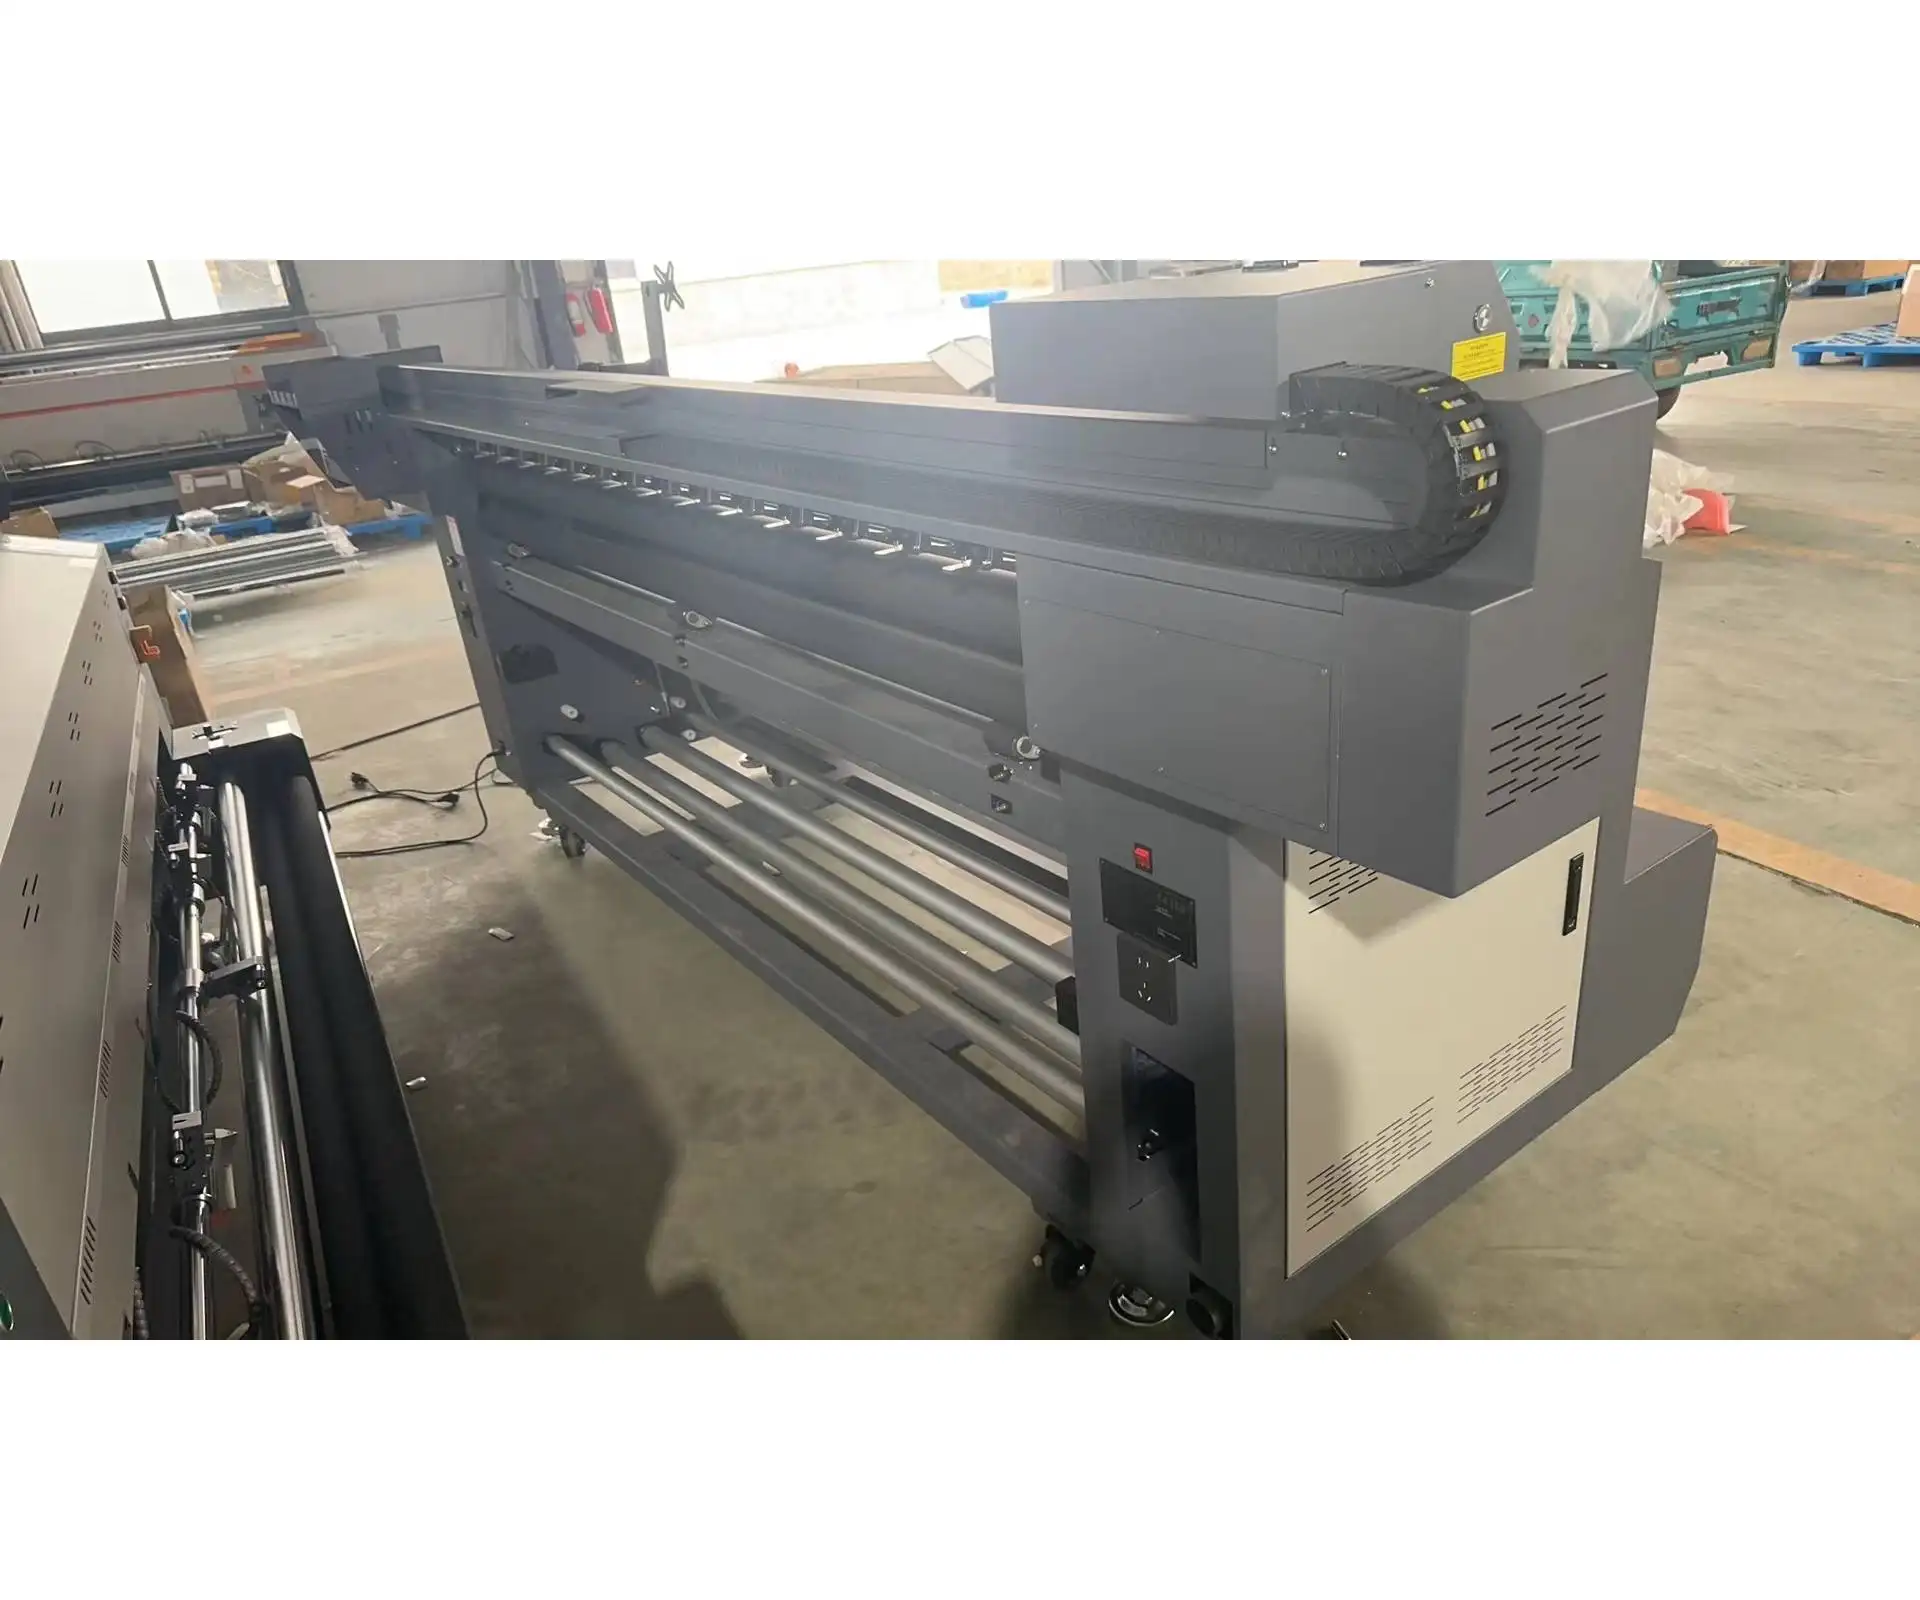 Tela Industrial 2100mm I3200 A1 4 cabezales de impresión Impresora de sublimación digital Impresora textil digital Impresora de pancartas de banderas